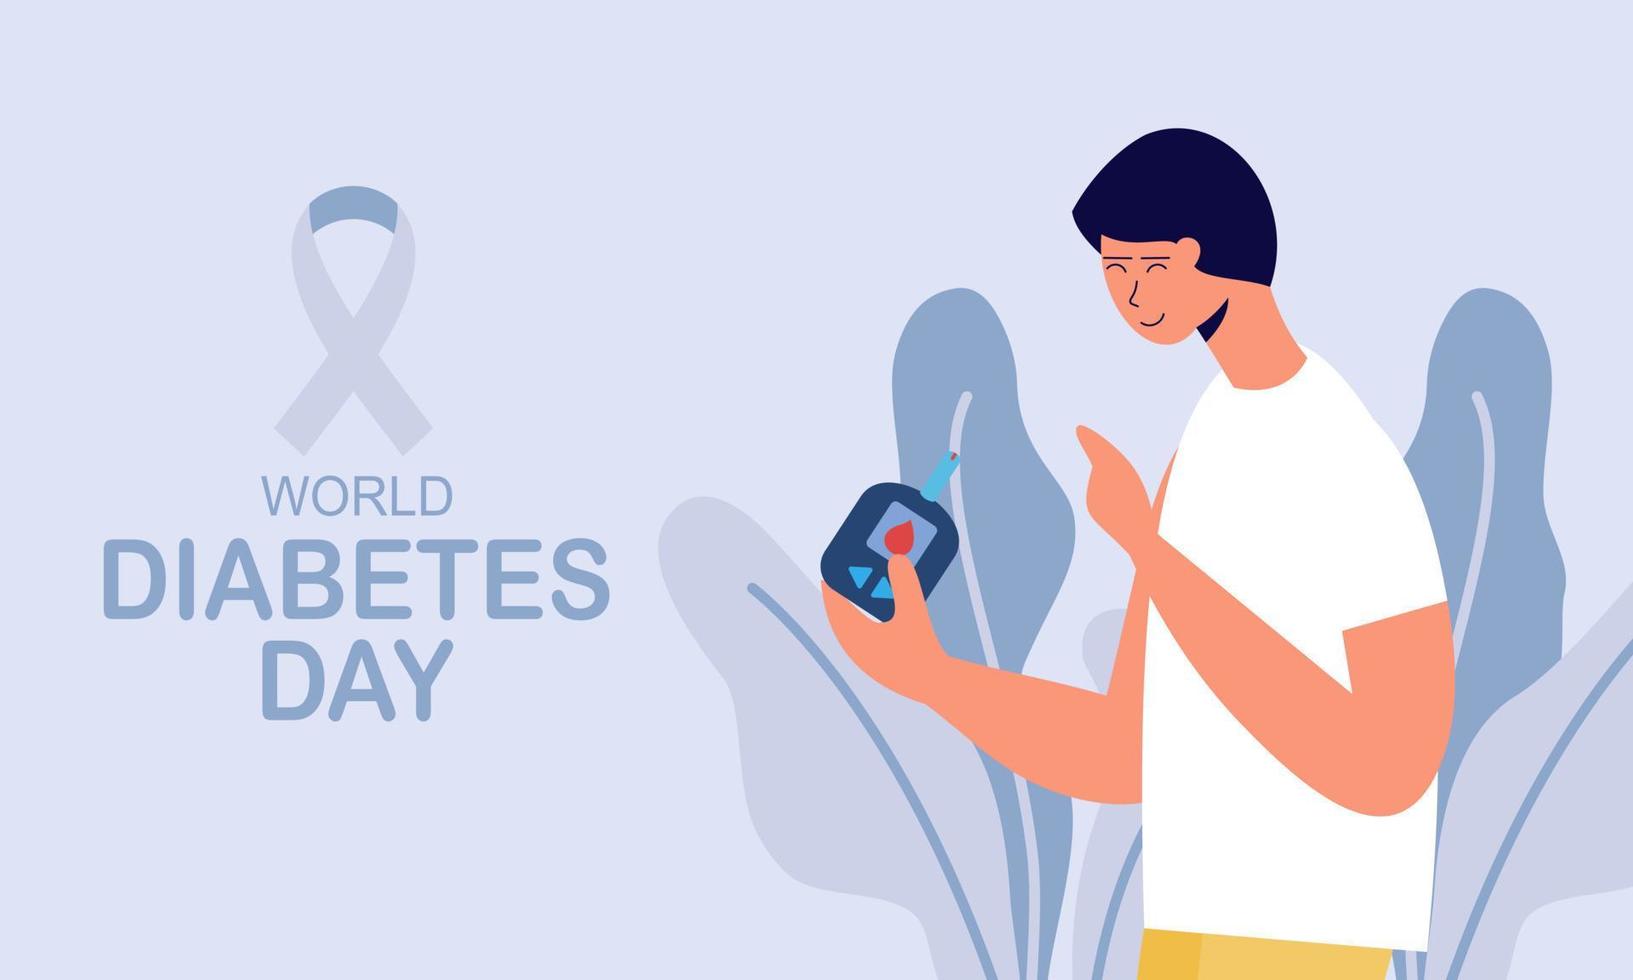 fond de la journée mondiale du diabète, compteur de glycémie et concept de production d'insuline vecteur